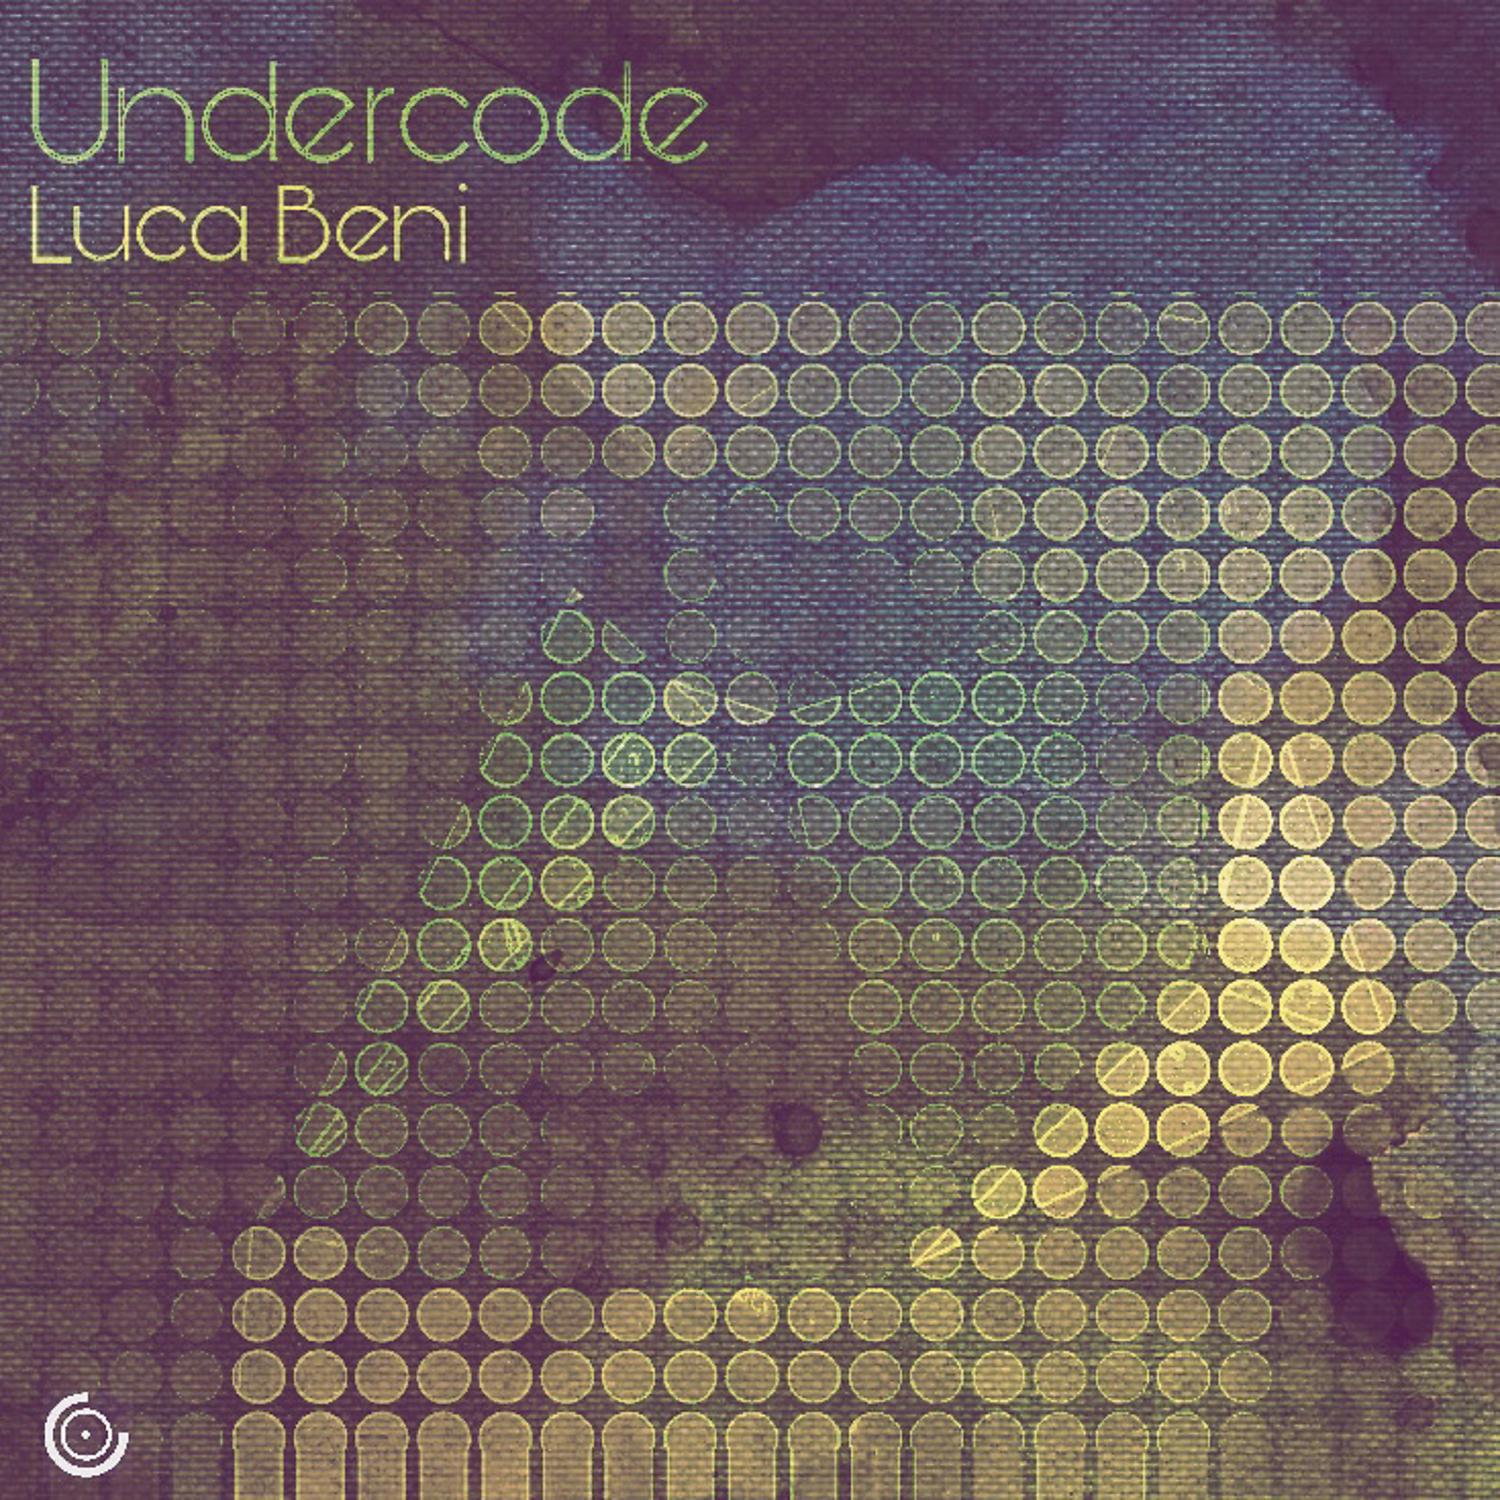 Постер альбома Undercode